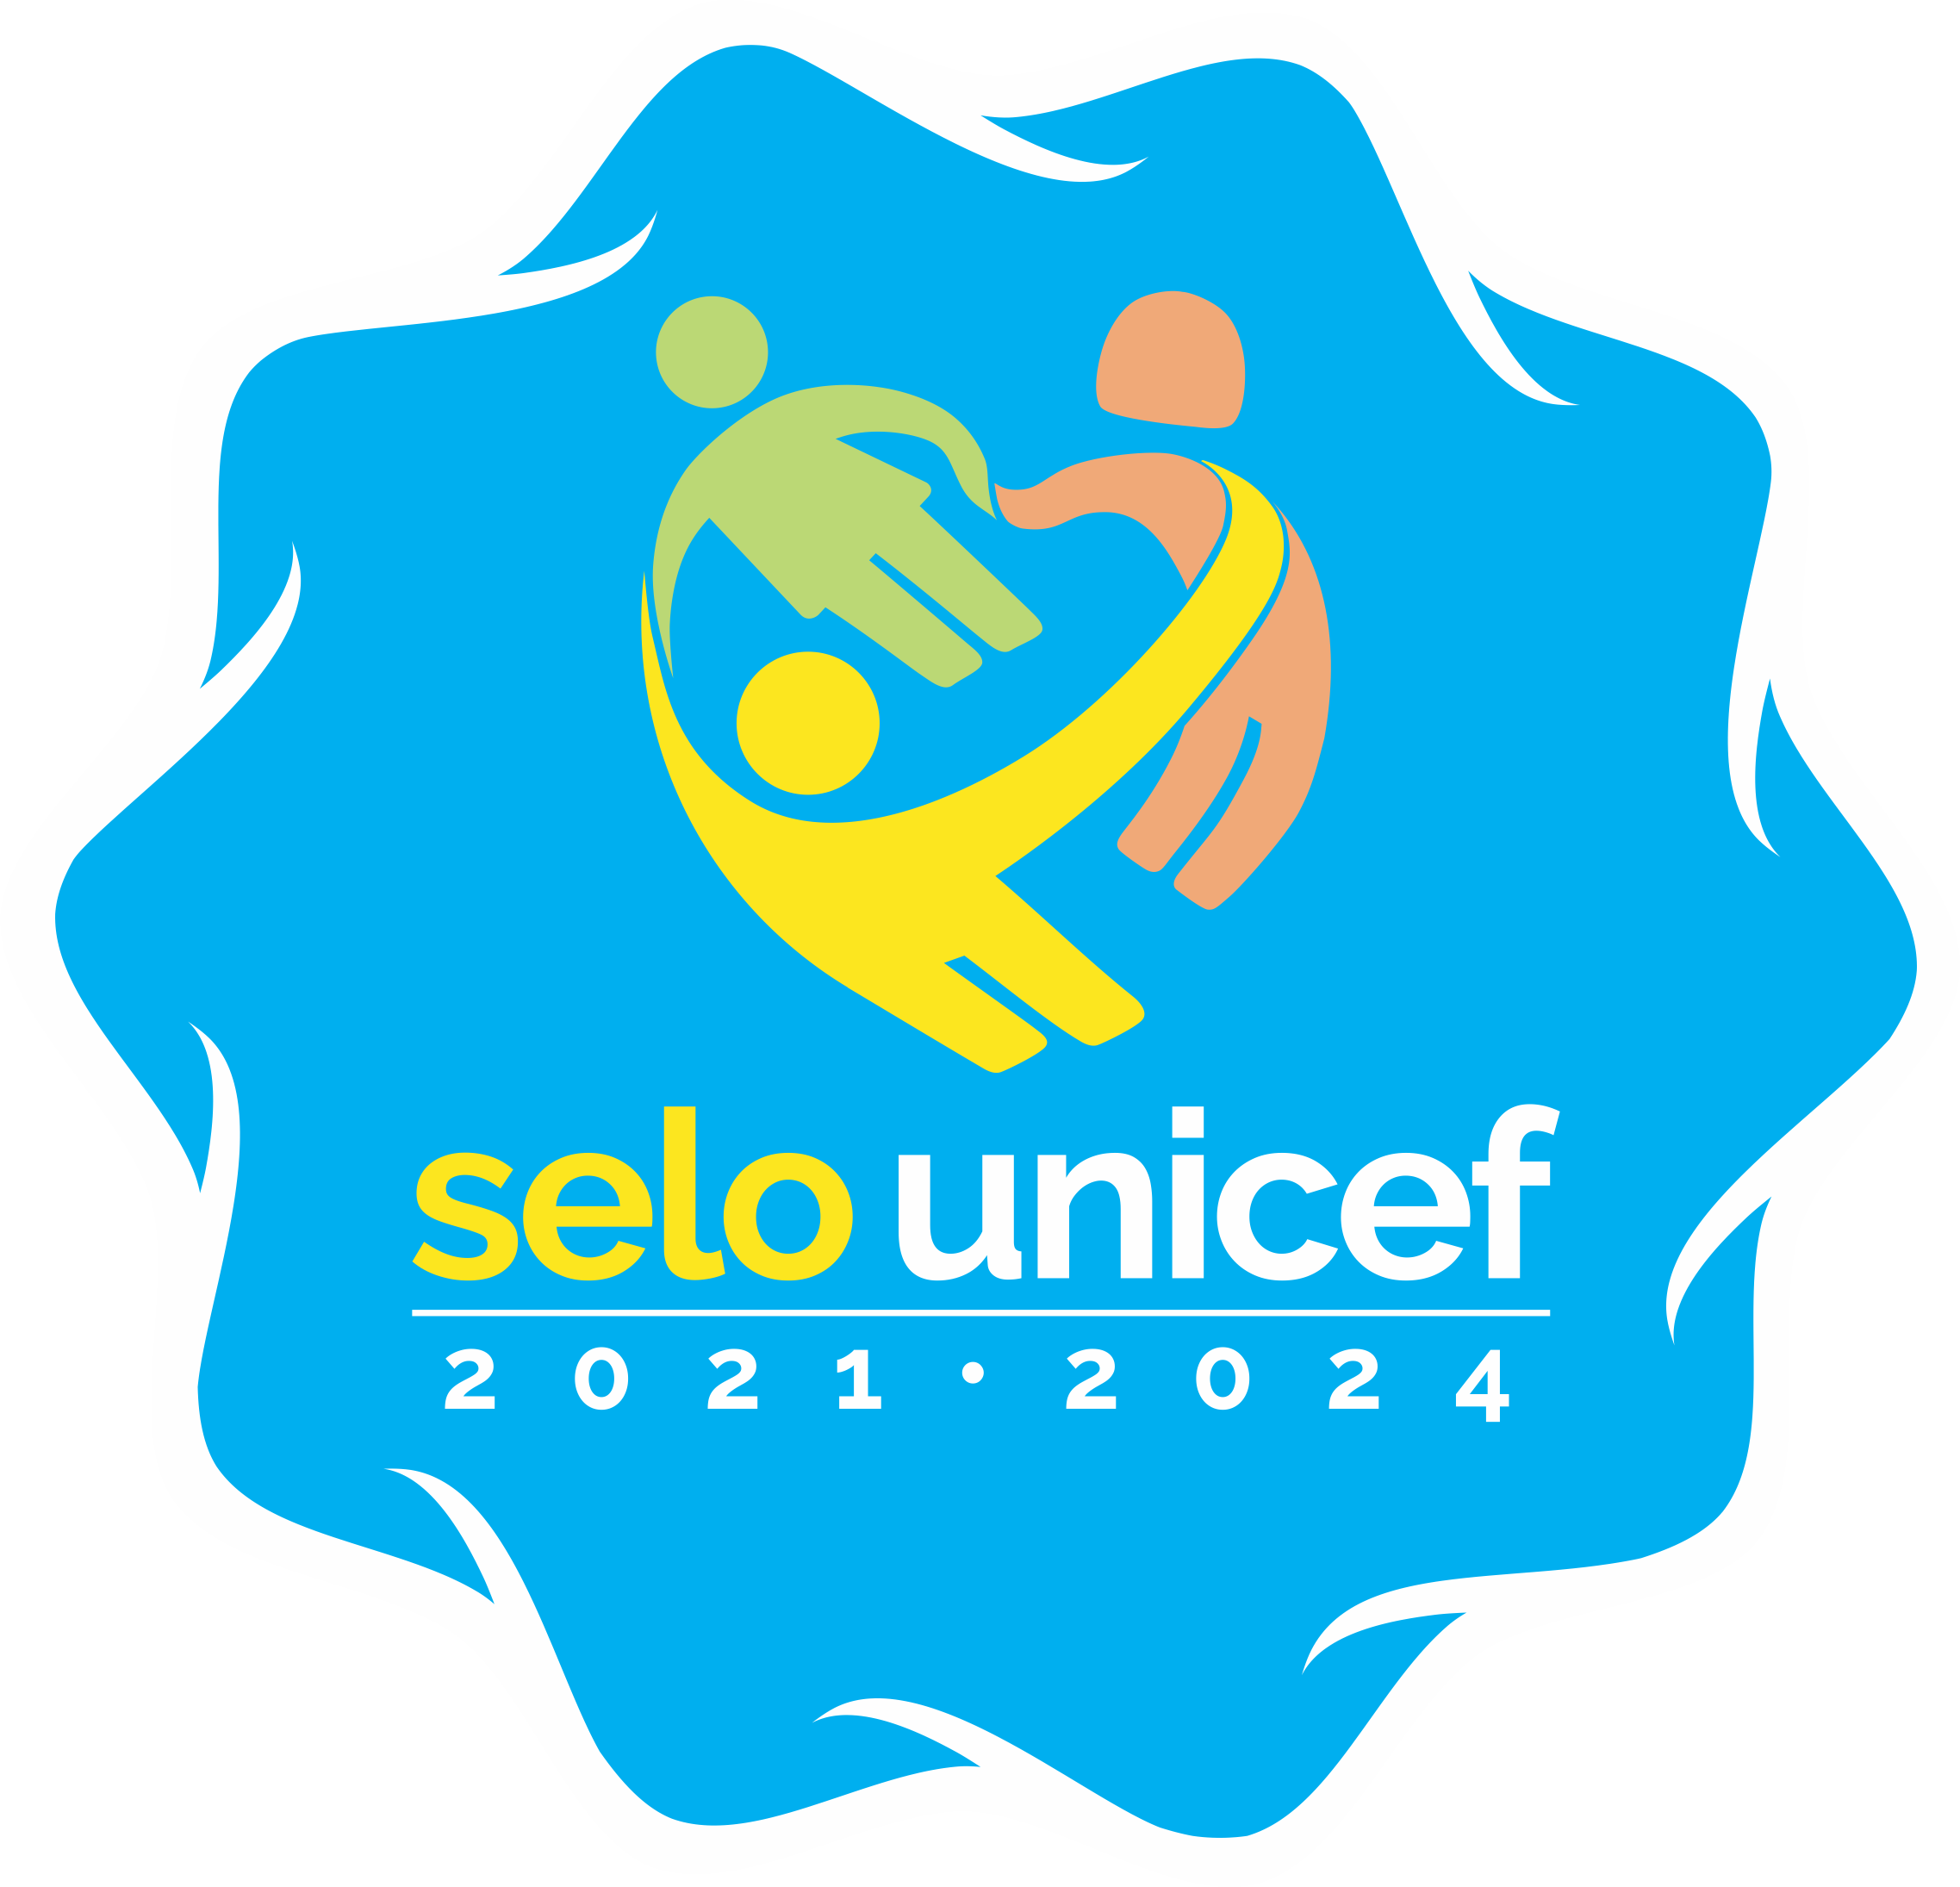 O Selo UNICEF | Selo UNICEF